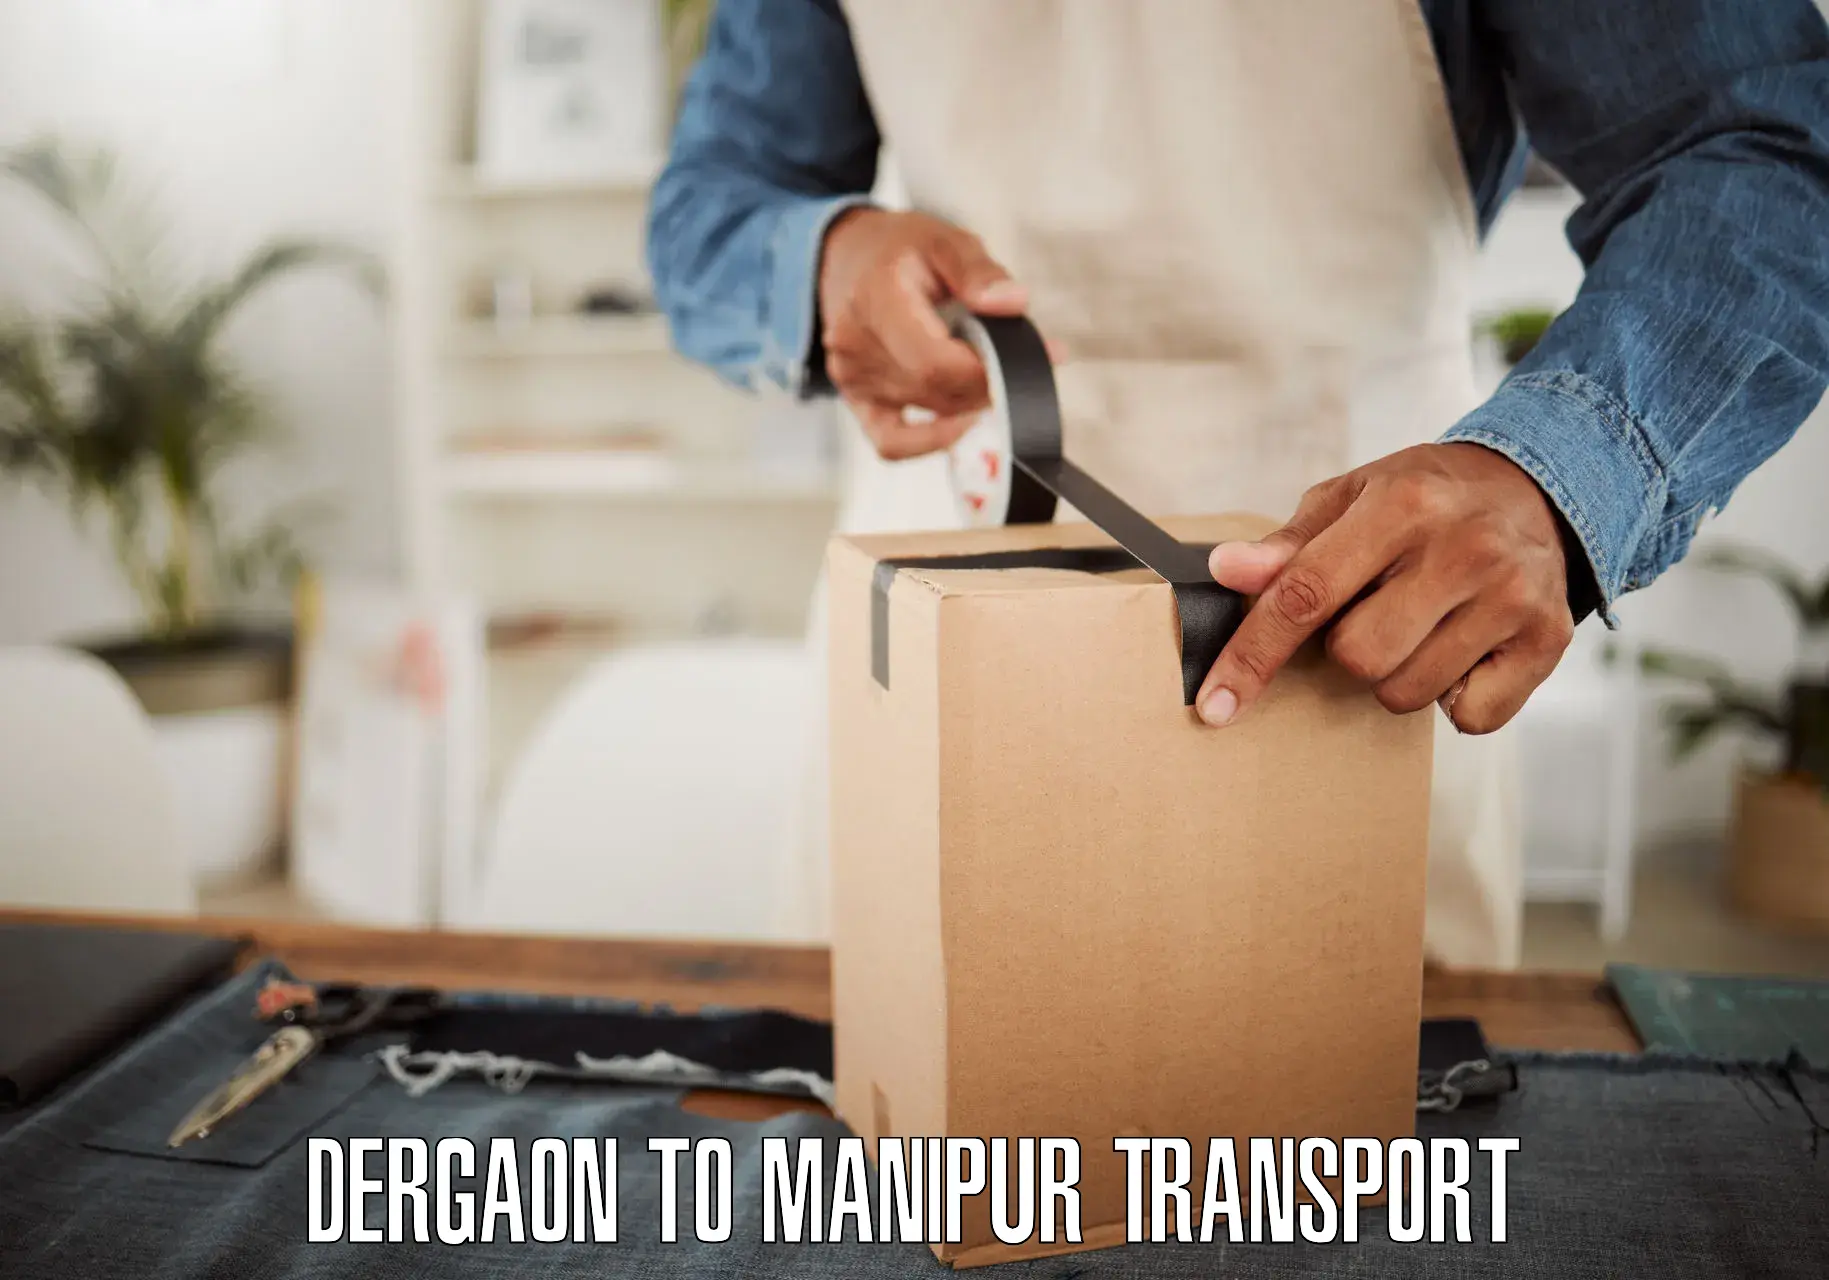 Vehicle transport services Dergaon to Churachandpur